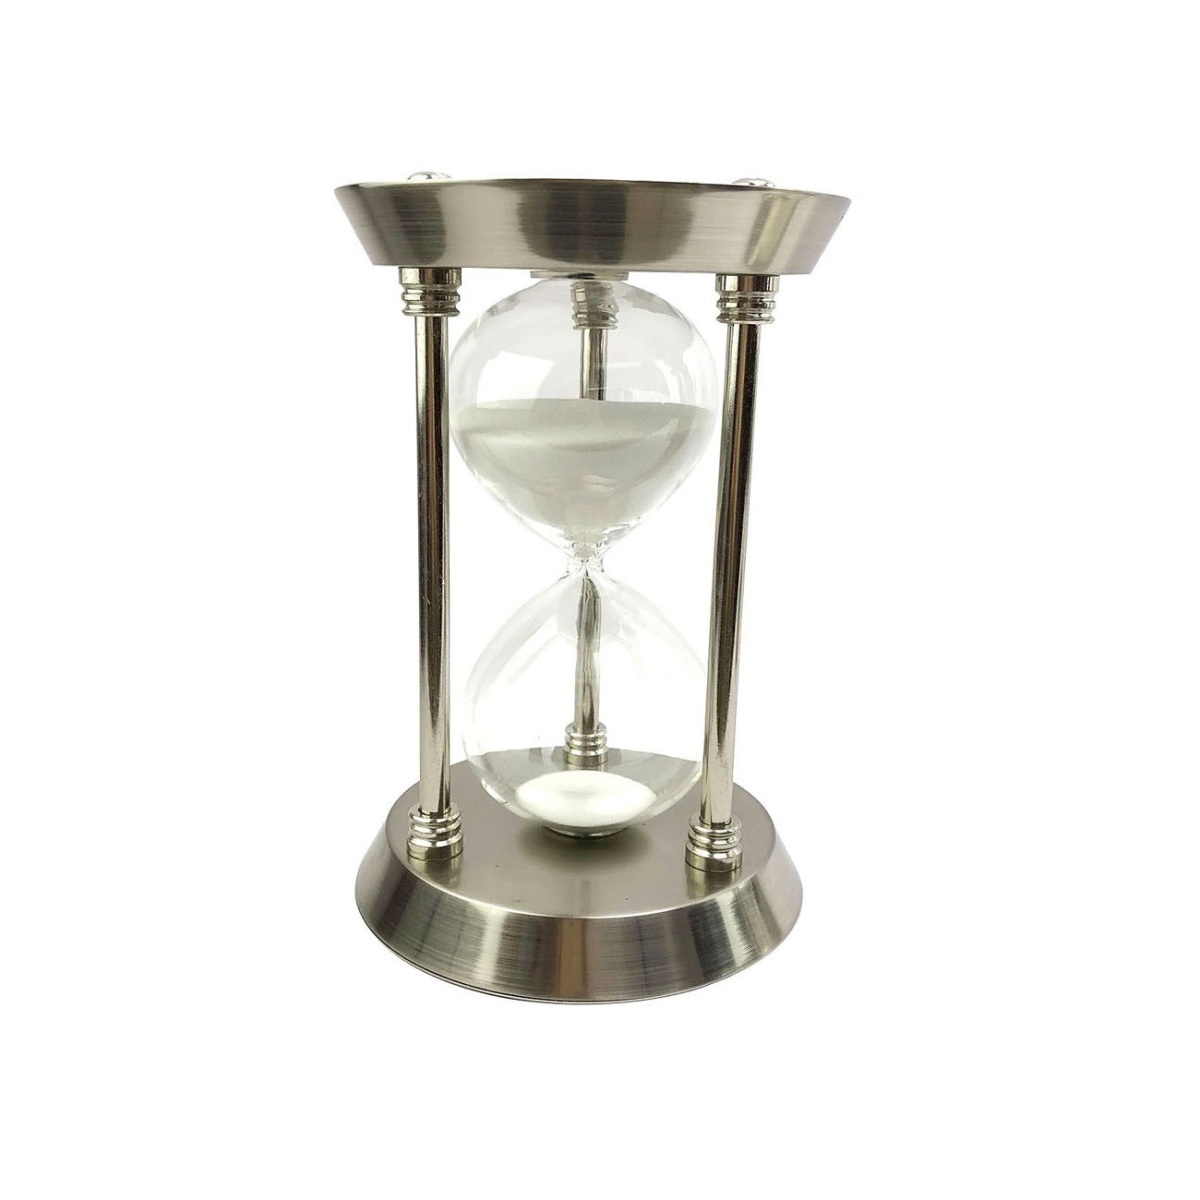 砂時計 サンドタイマー インテリアタイマー 砂タイマー 目標達成 集中し効率的 時間管理ツール 料理 ベーキング ゲーム (30分)_画像1